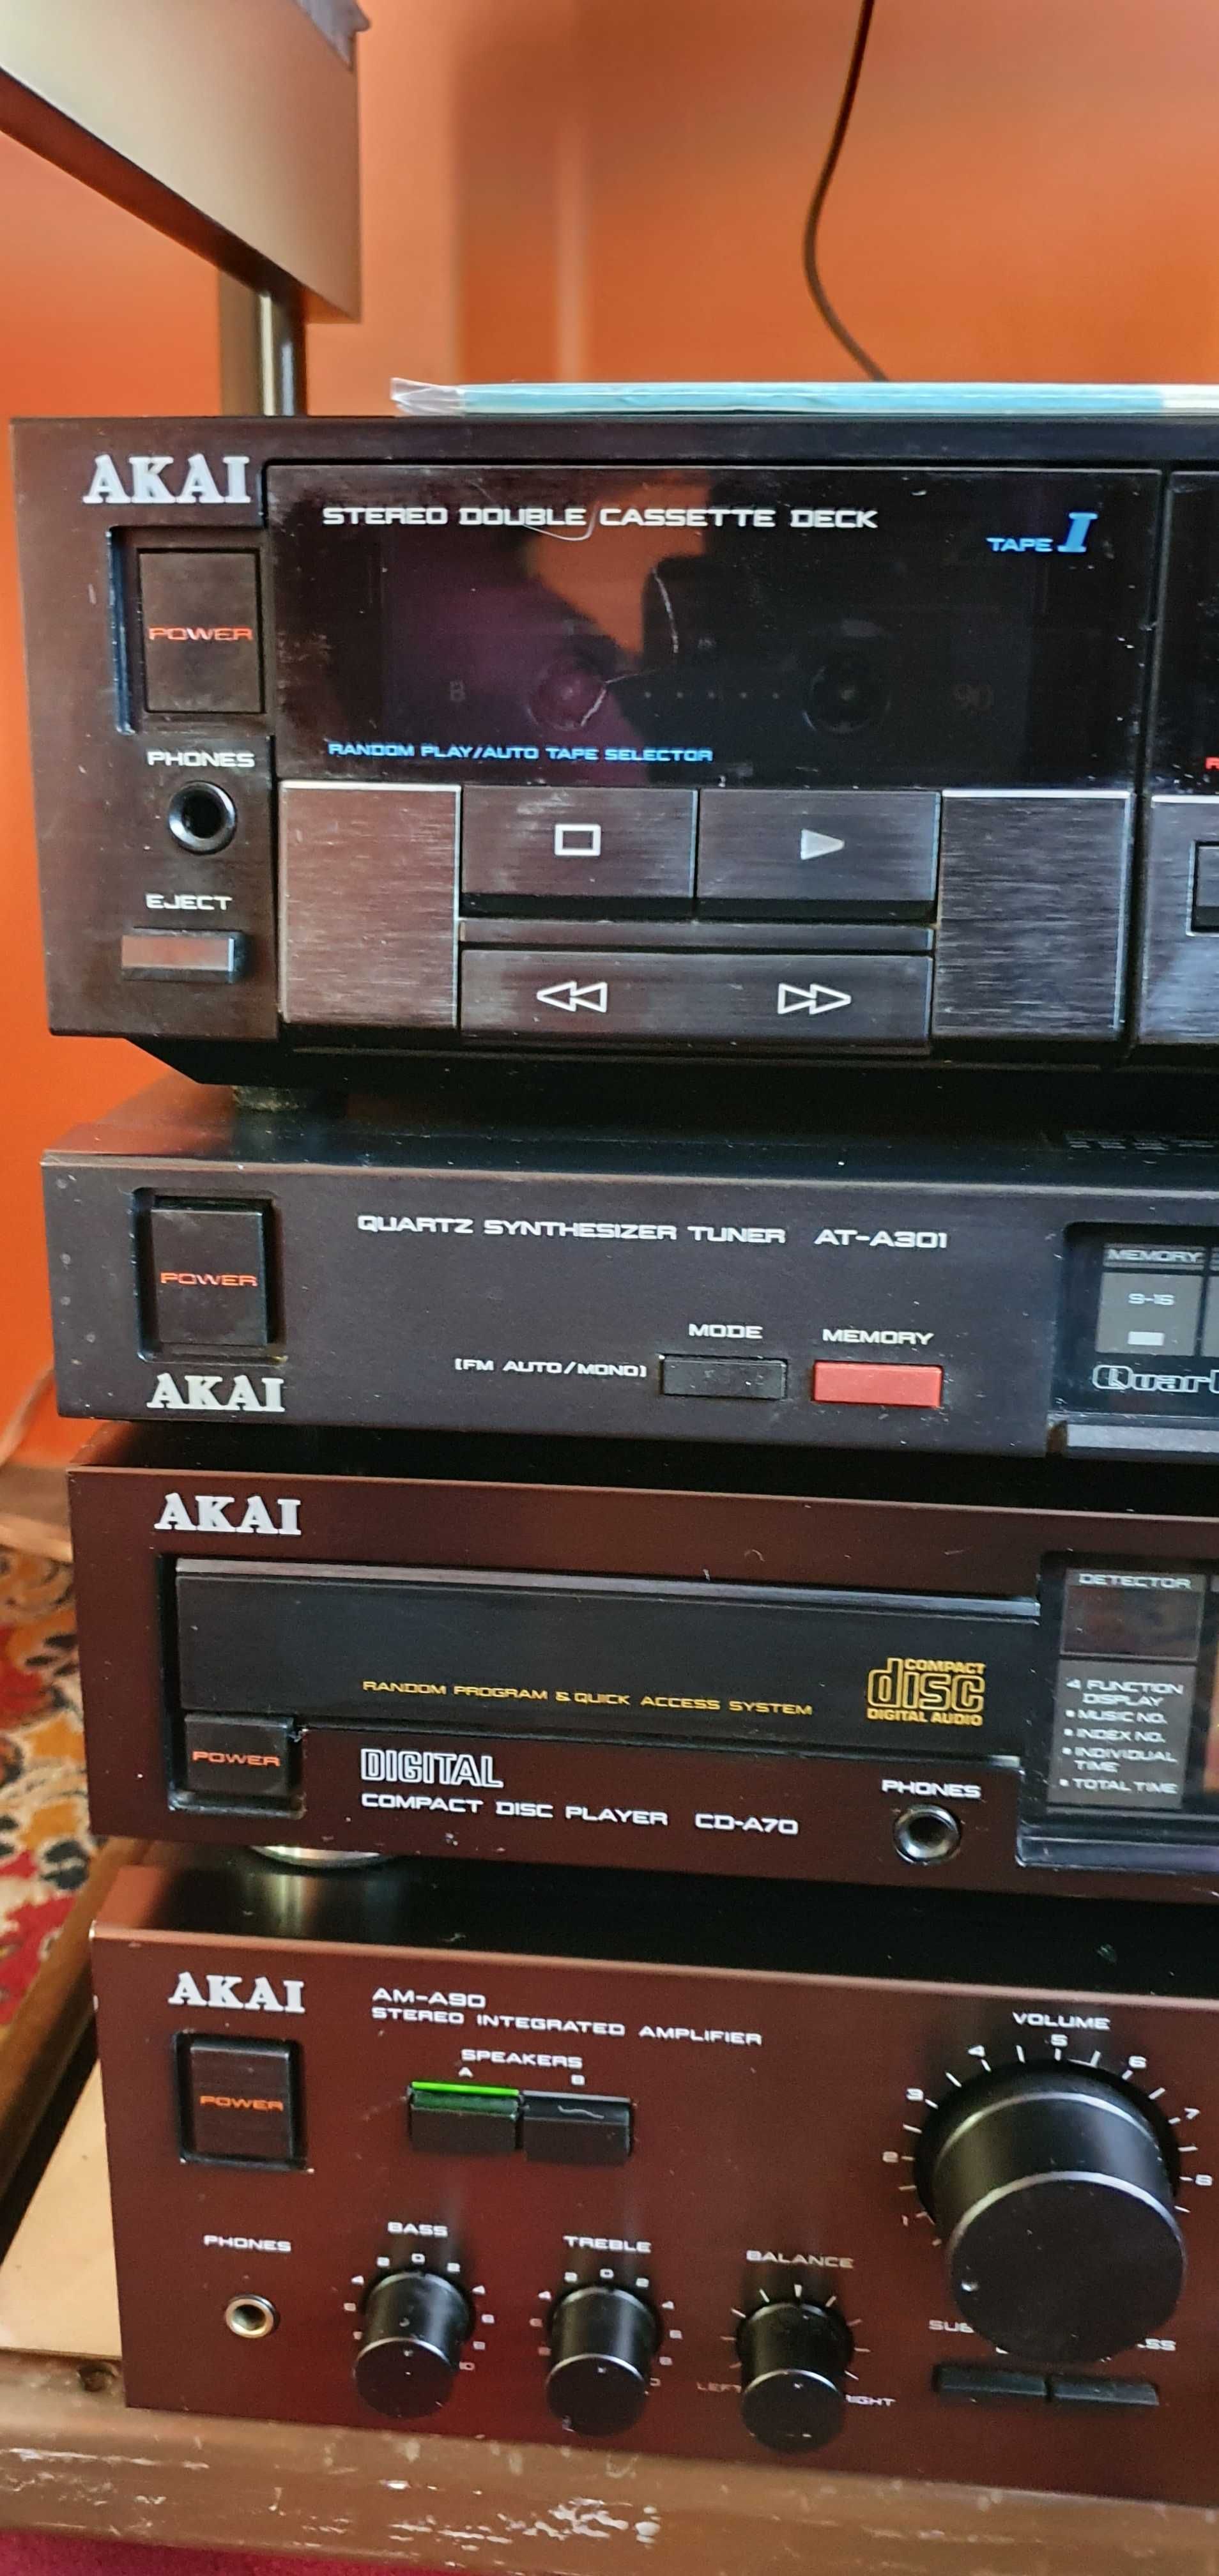 Oazja Zestaw audiofilski AKAI AM-A90 + CD-A70 + AT-A301 + HX-A451W z g